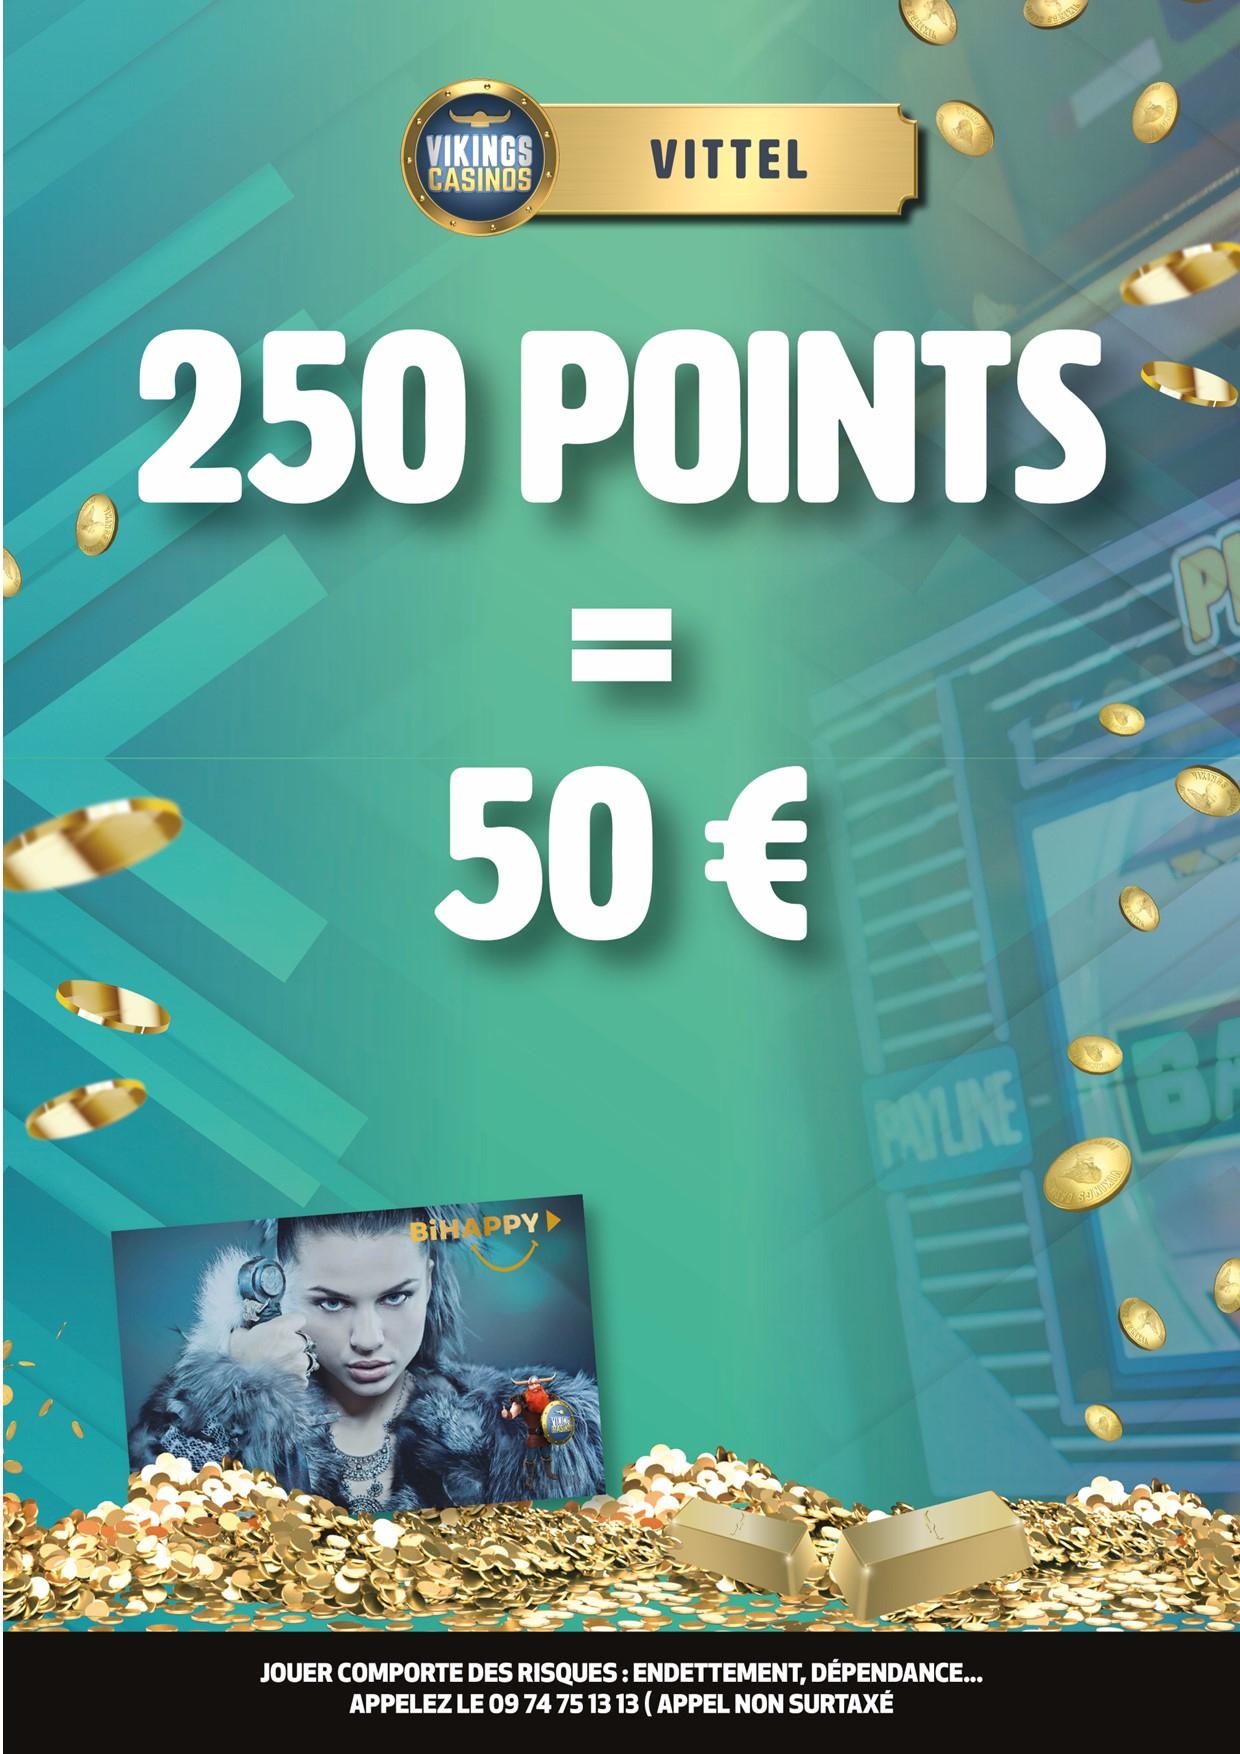 50 € Contre 250 Points